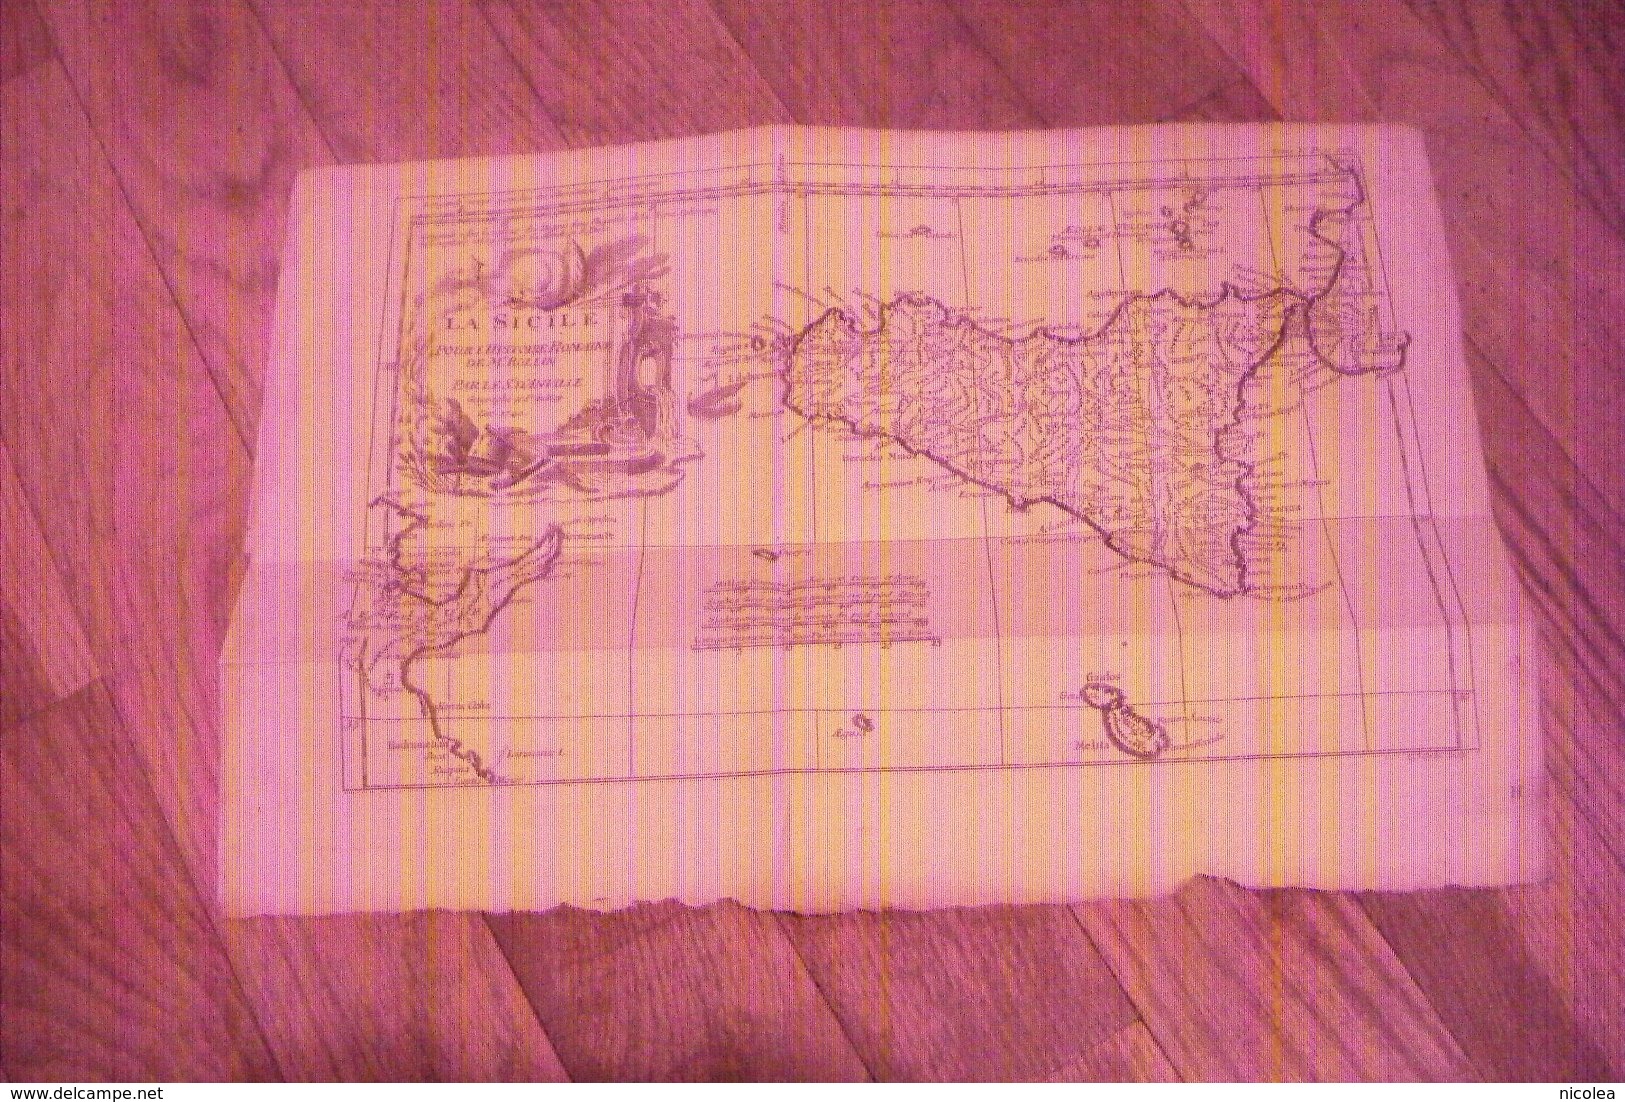 CARTE DE LA SICILE DE 1740 POUR L'HISTOIRE ROMAINE DE Mr ROLLIN PAR LE SIEUR D'ANVILLE GEOGRAPHE DU ROY - Mapas Geográficas